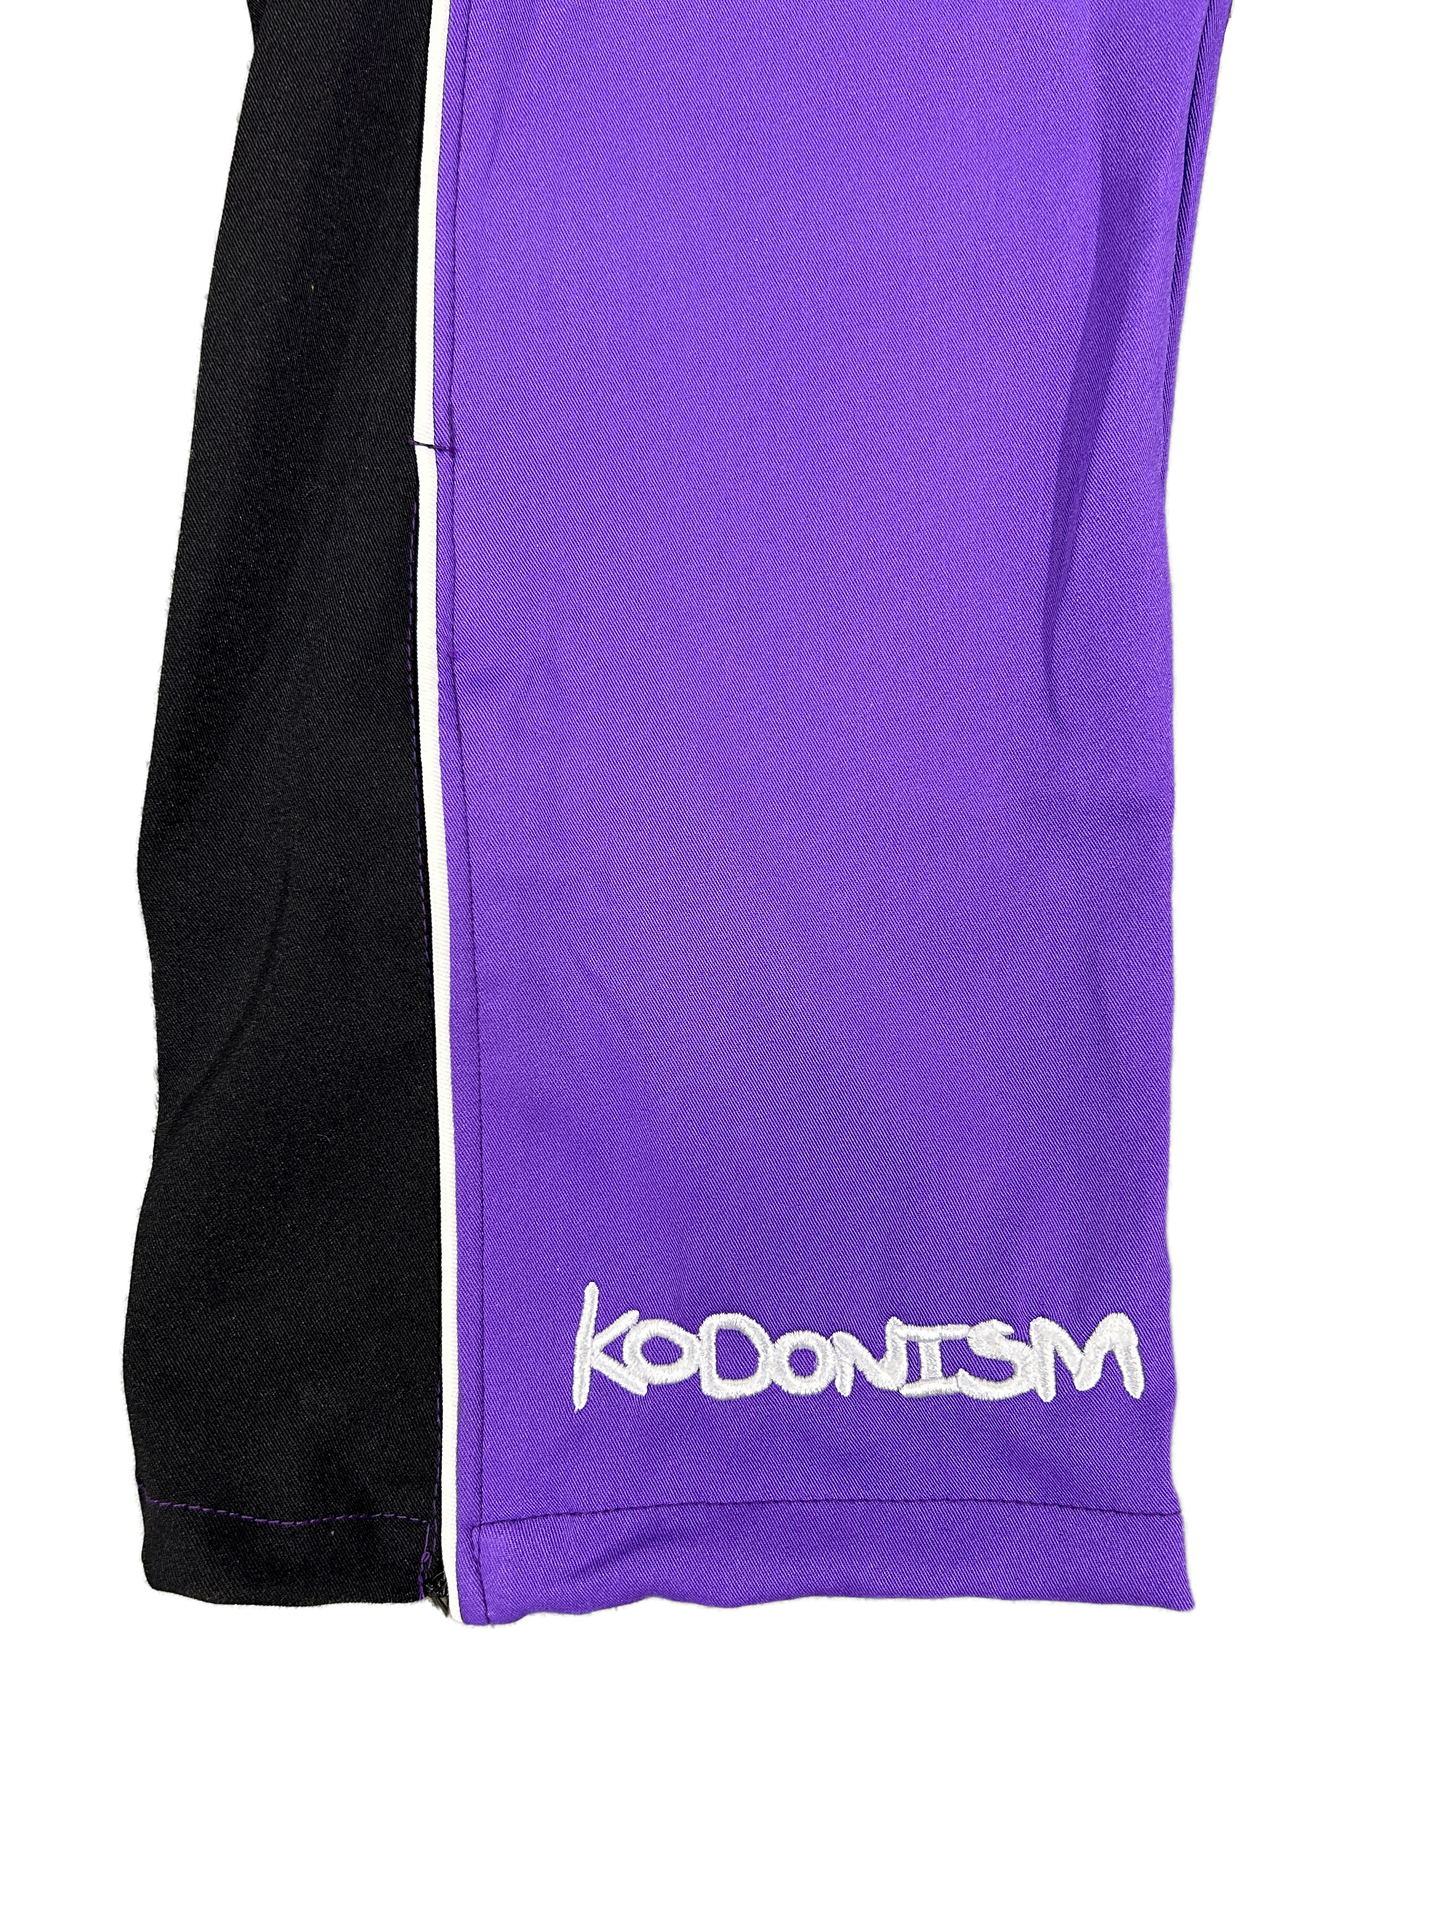 K Track Pants (Purple/Black)